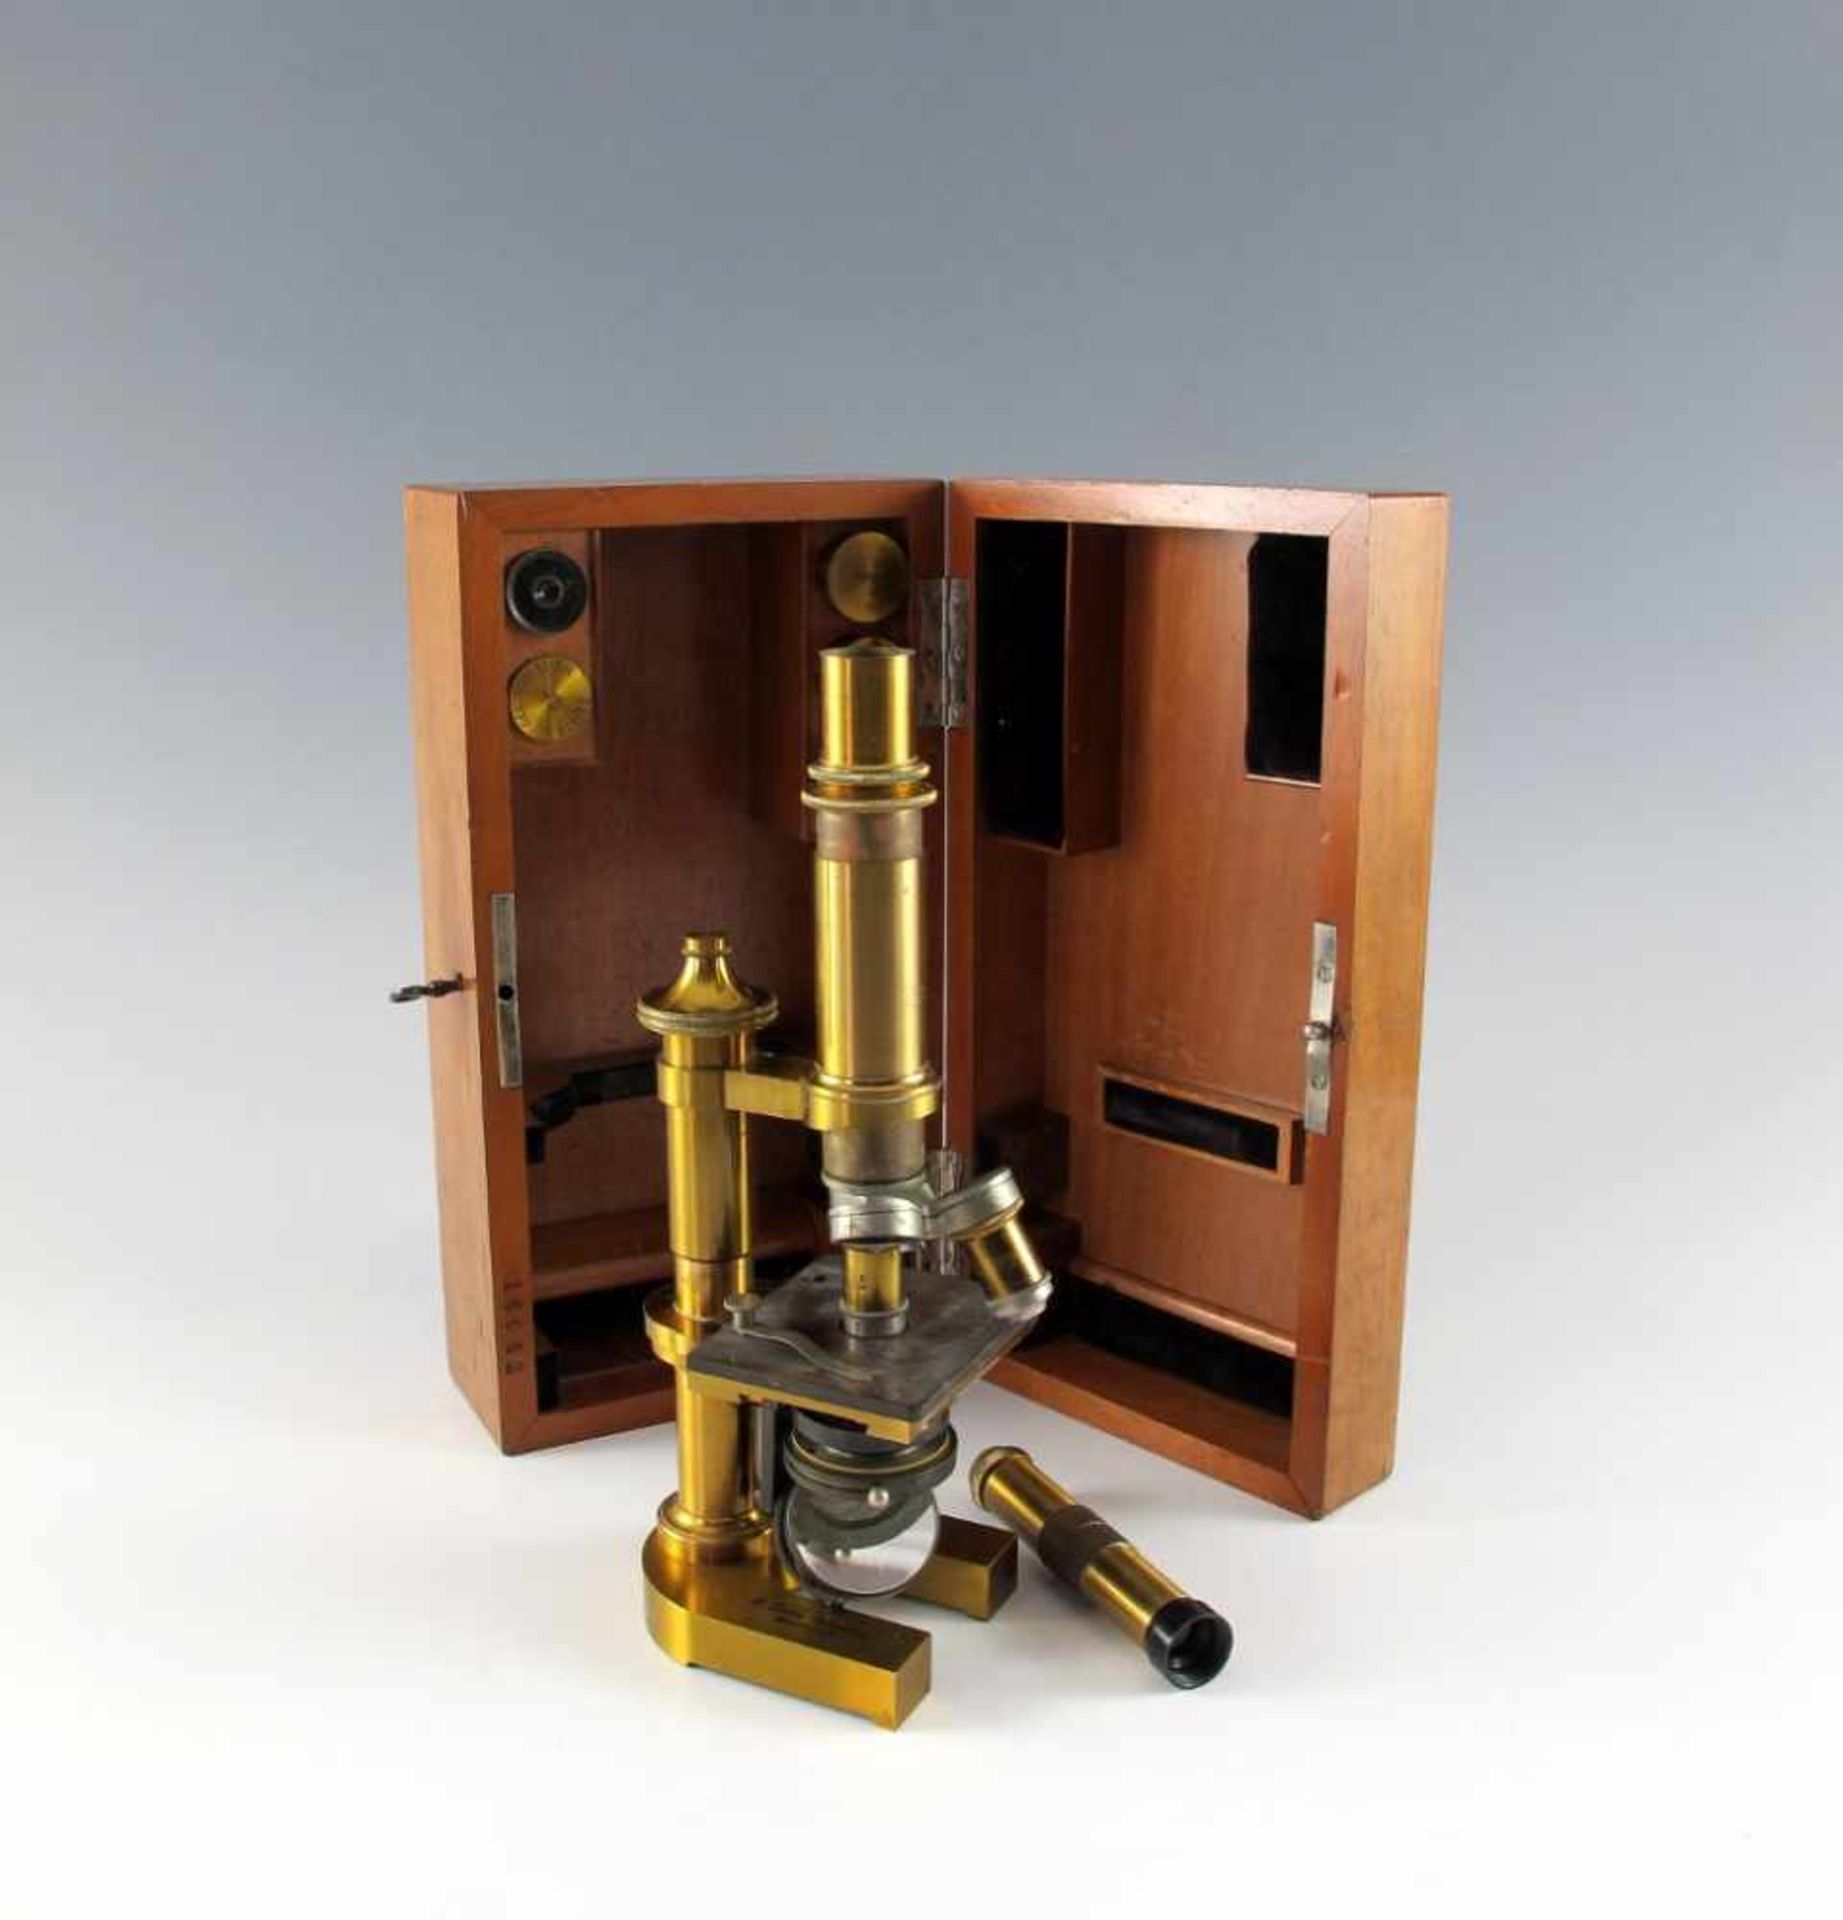 Mikroskop Leitz Wetzlar No. 16042 mit zugehöriger hölzerner Transportbox. Monokular. Massives